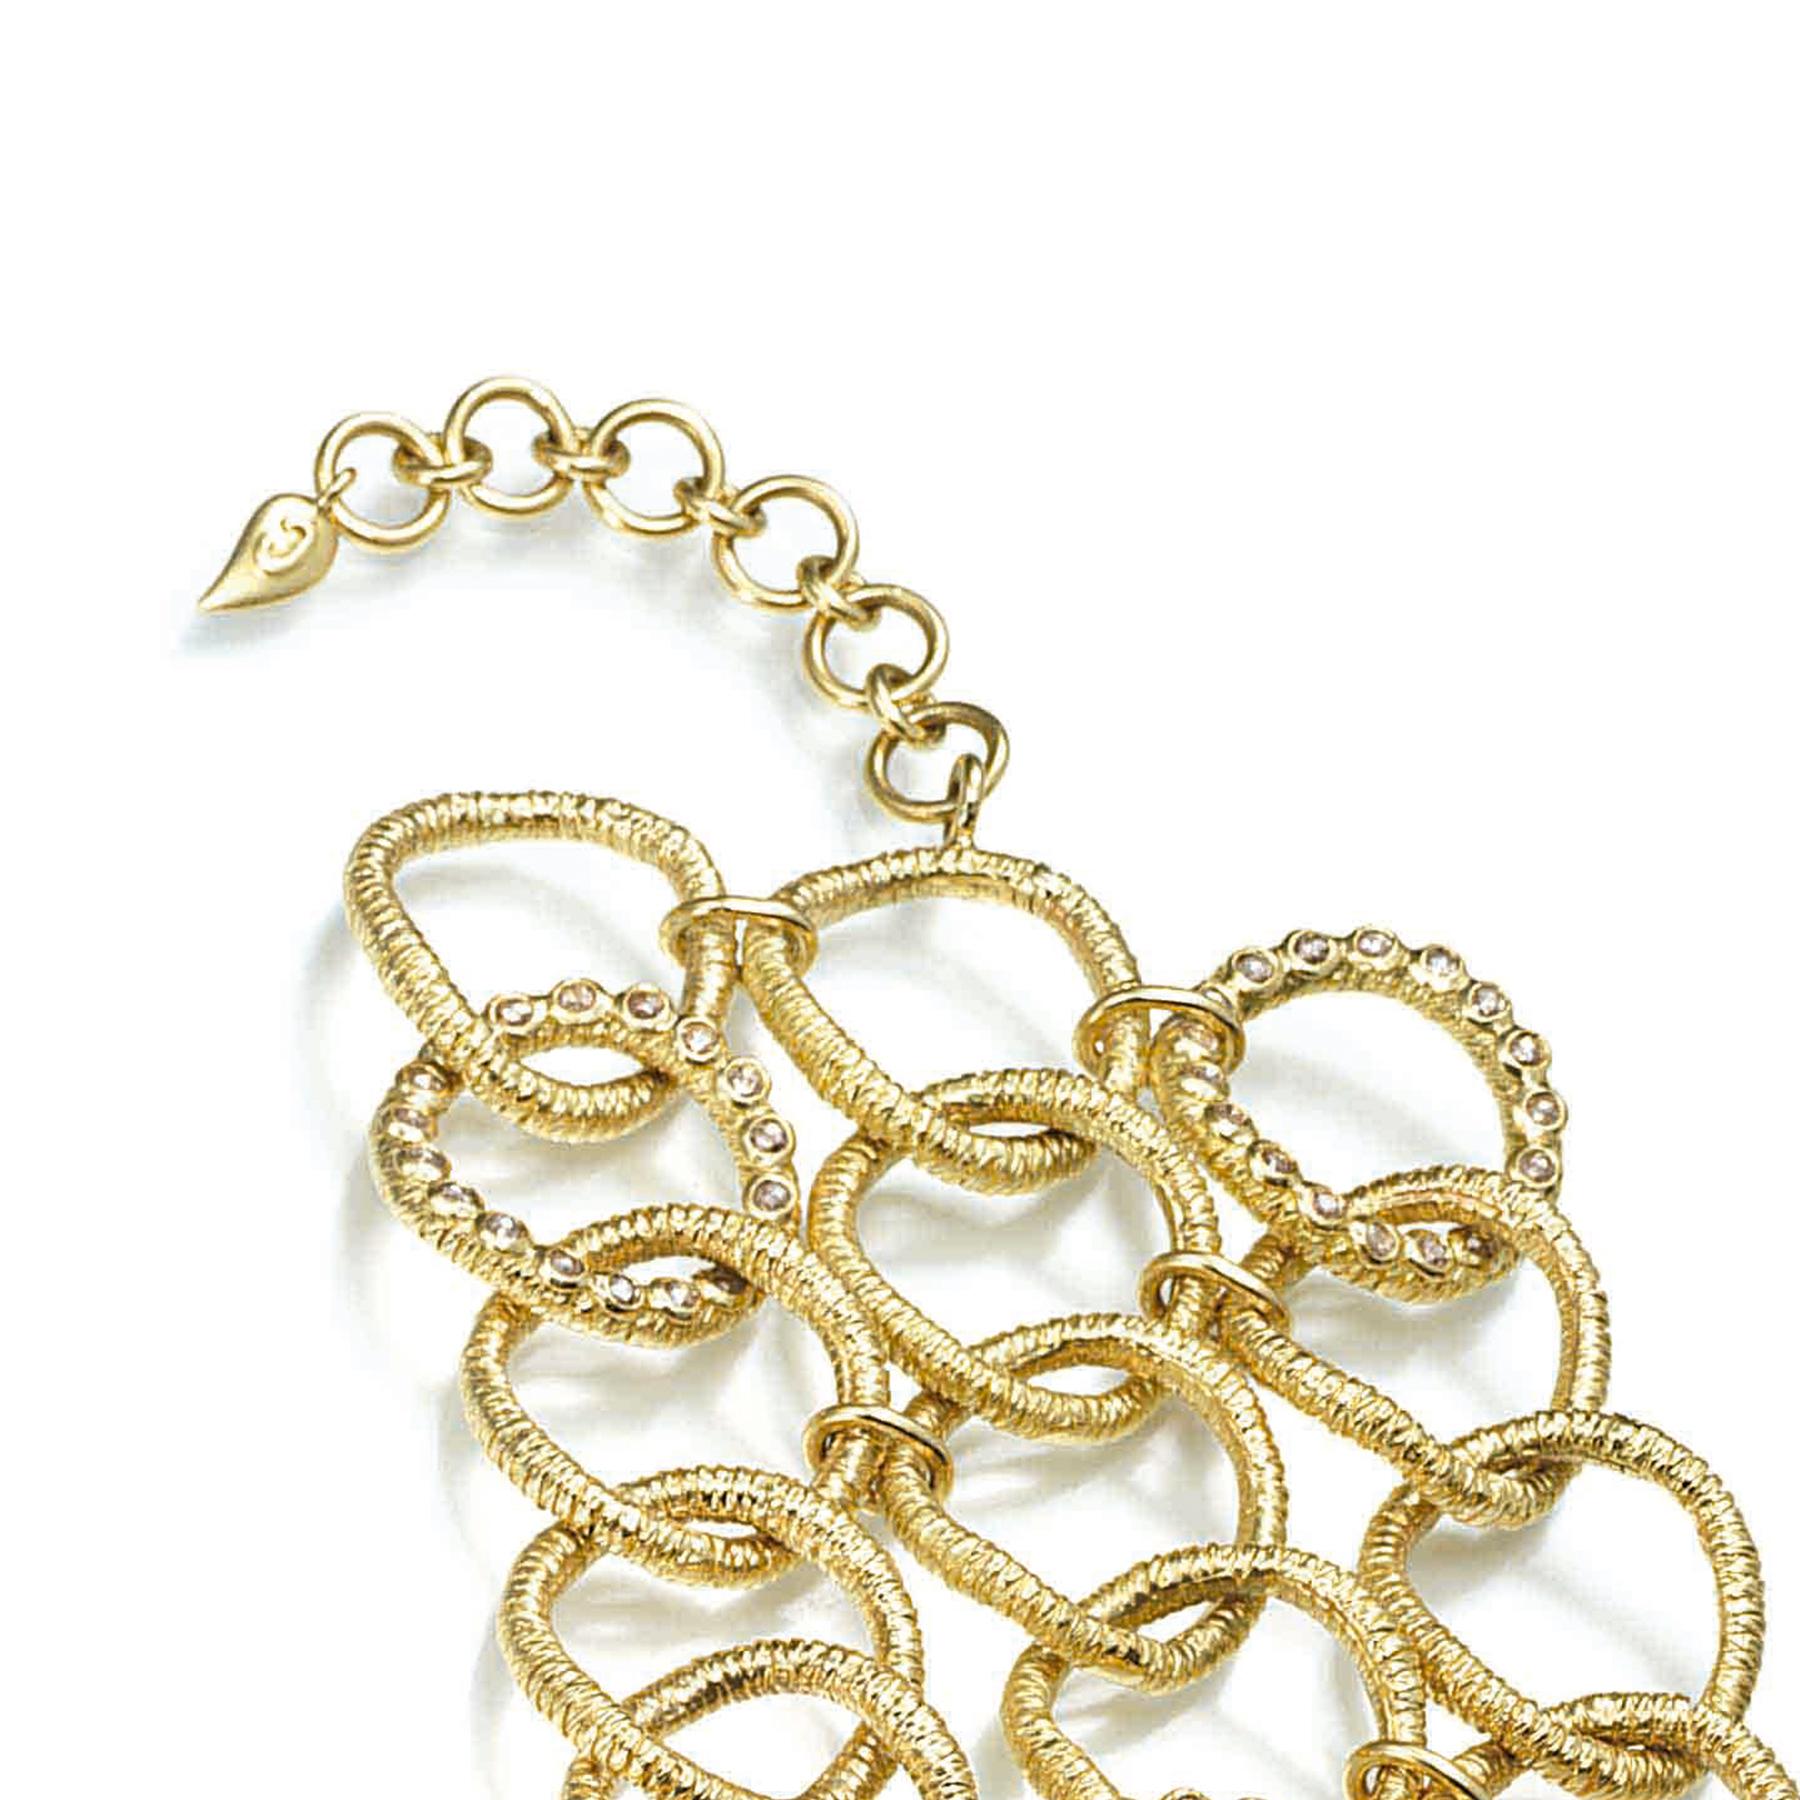 Bracelet à trois rangées de fils métalliques en or jaune 20 carats avec diamants taille rose de 0,30 carat. Ce bracelet est unique car il présente une texture de fil d'or martelé sur chaque fil enroulé, ce qui est évident dans beaucoup de pièces de